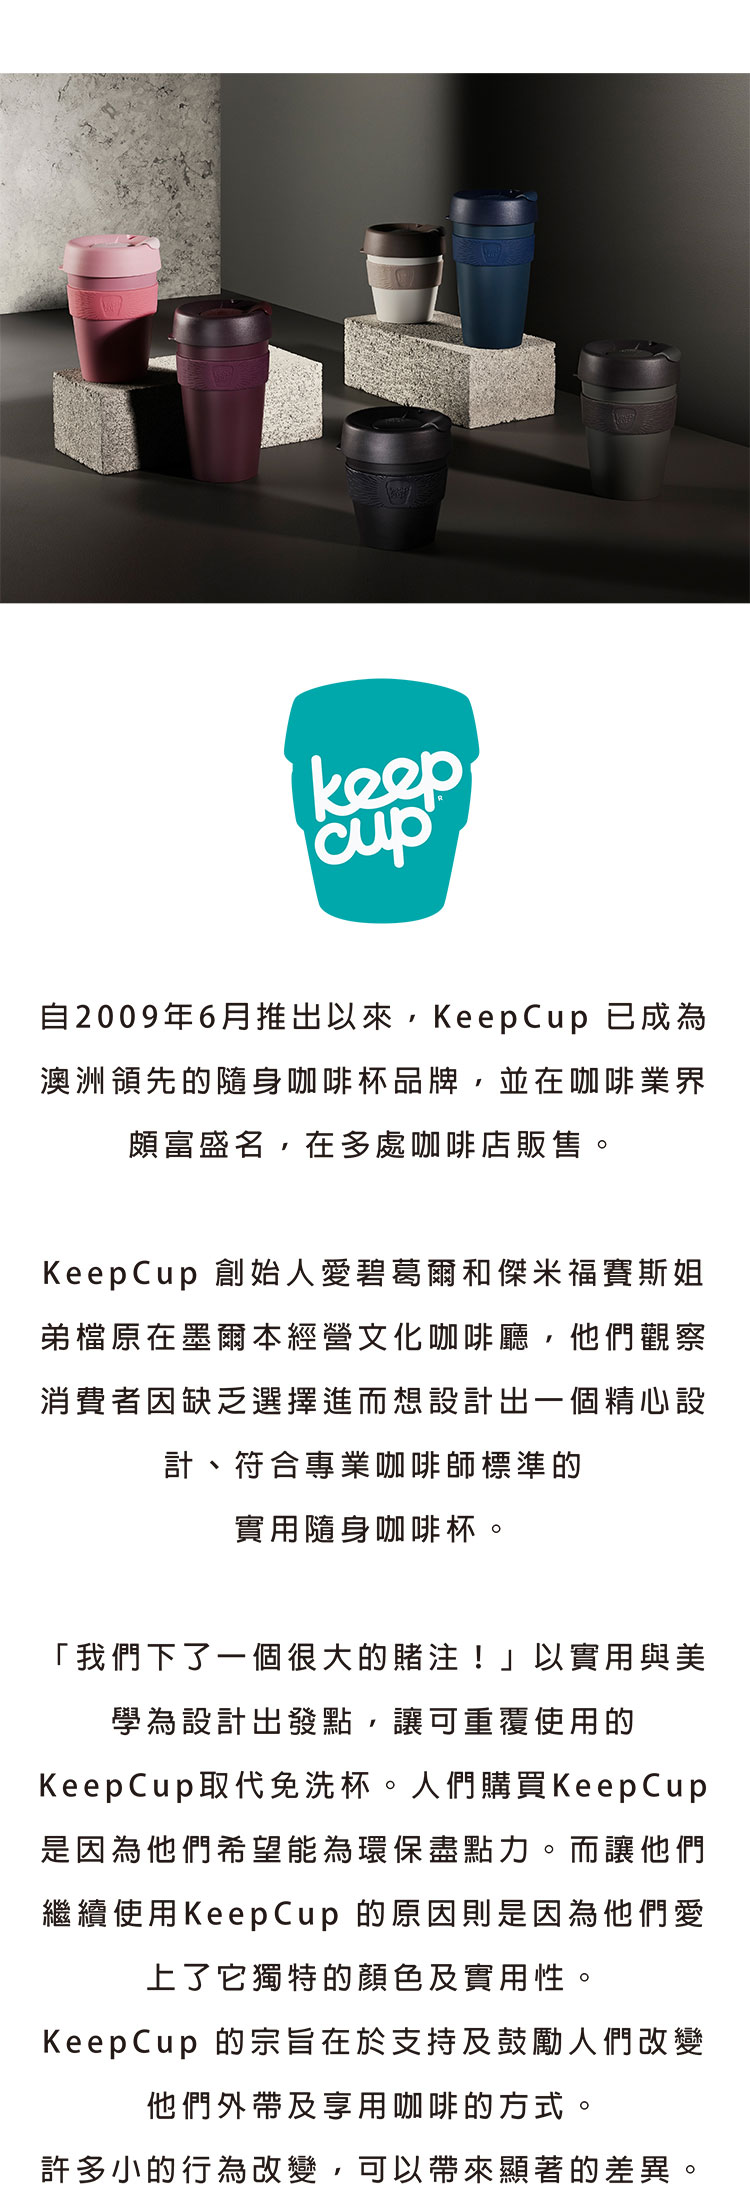 澳洲 KeepCup 隨身咖啡杯 隨行杯